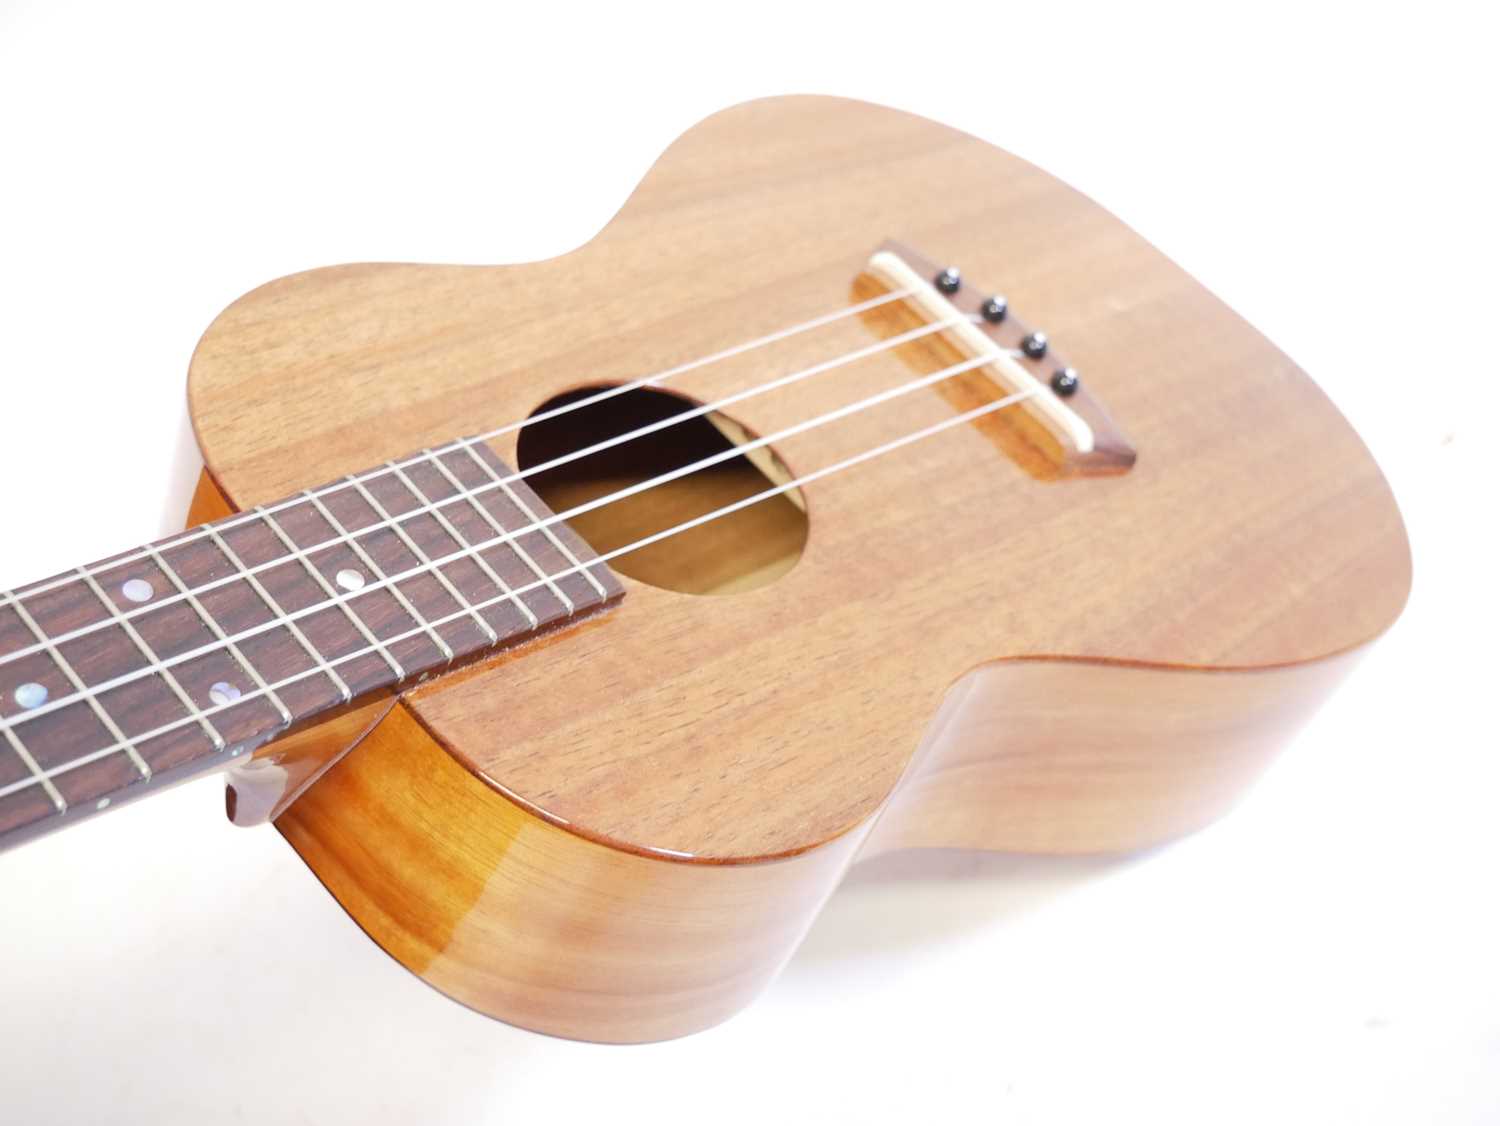 Kanile'a K-1 tenor ukulele - Image 2 of 10